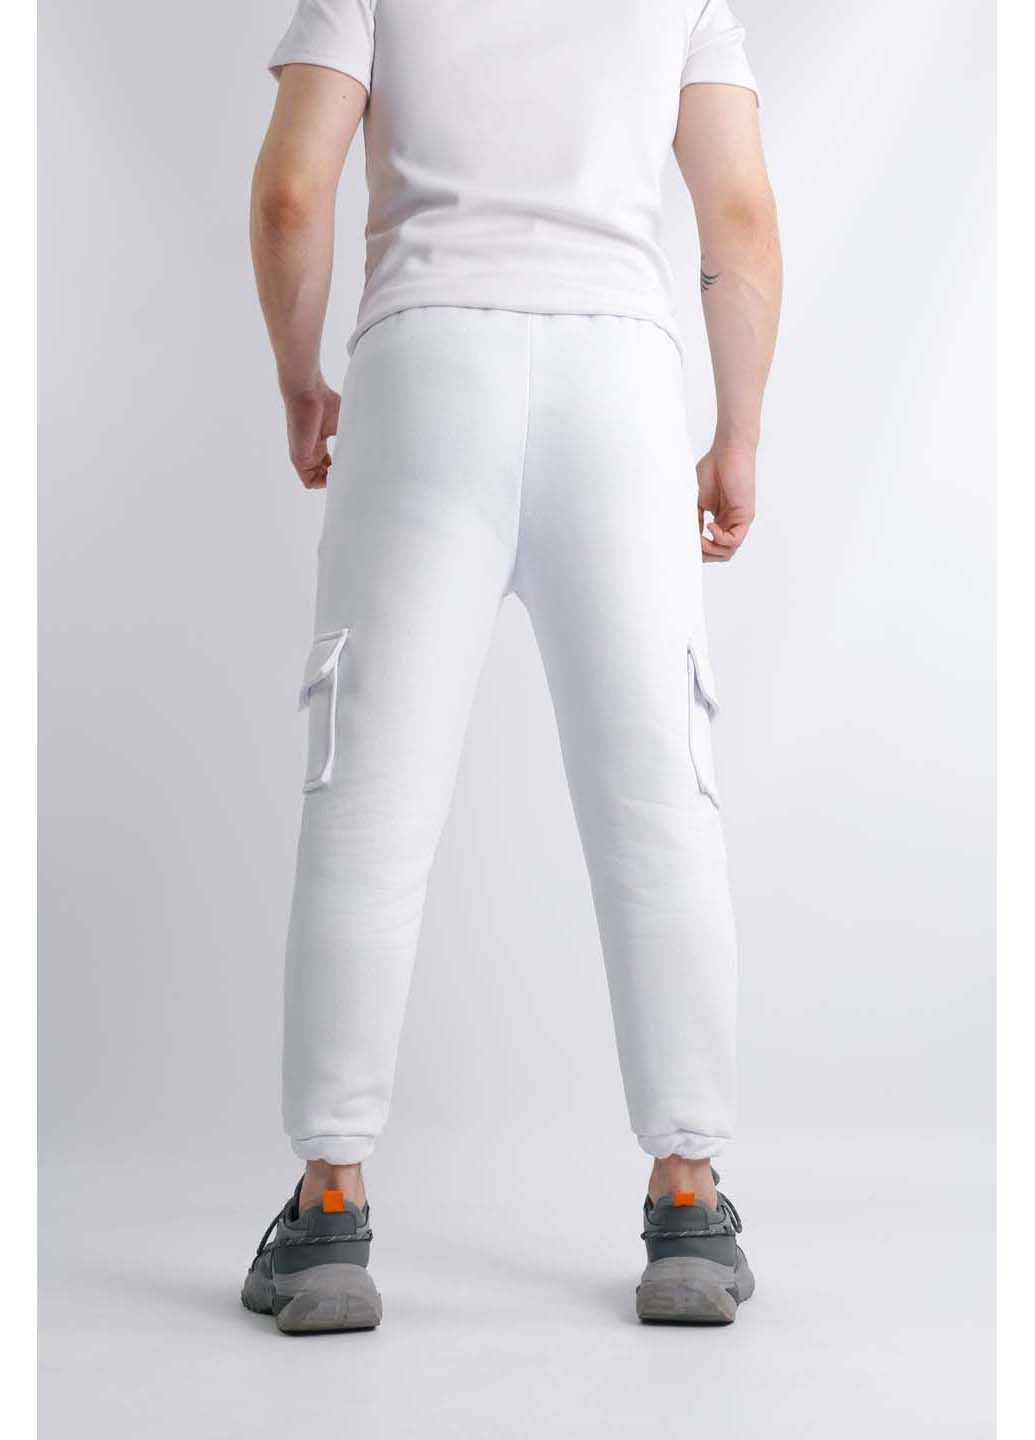 Белые спортивные демисезонные брюки Intruder